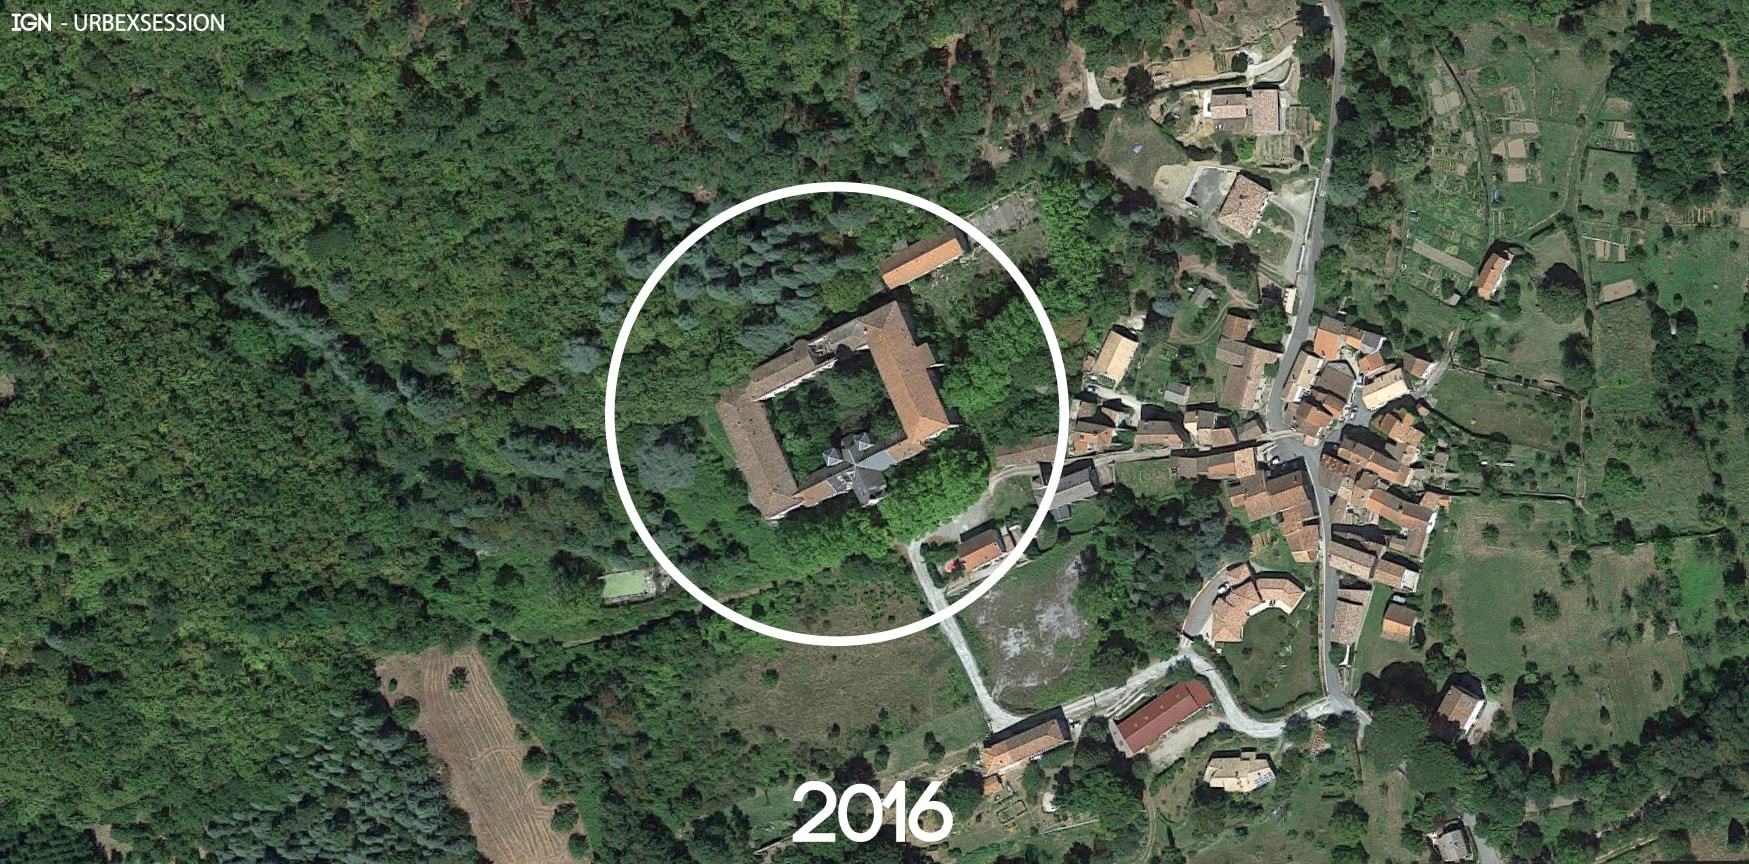 Pensionnat catholique abandonné en Languedoc-Roussillon